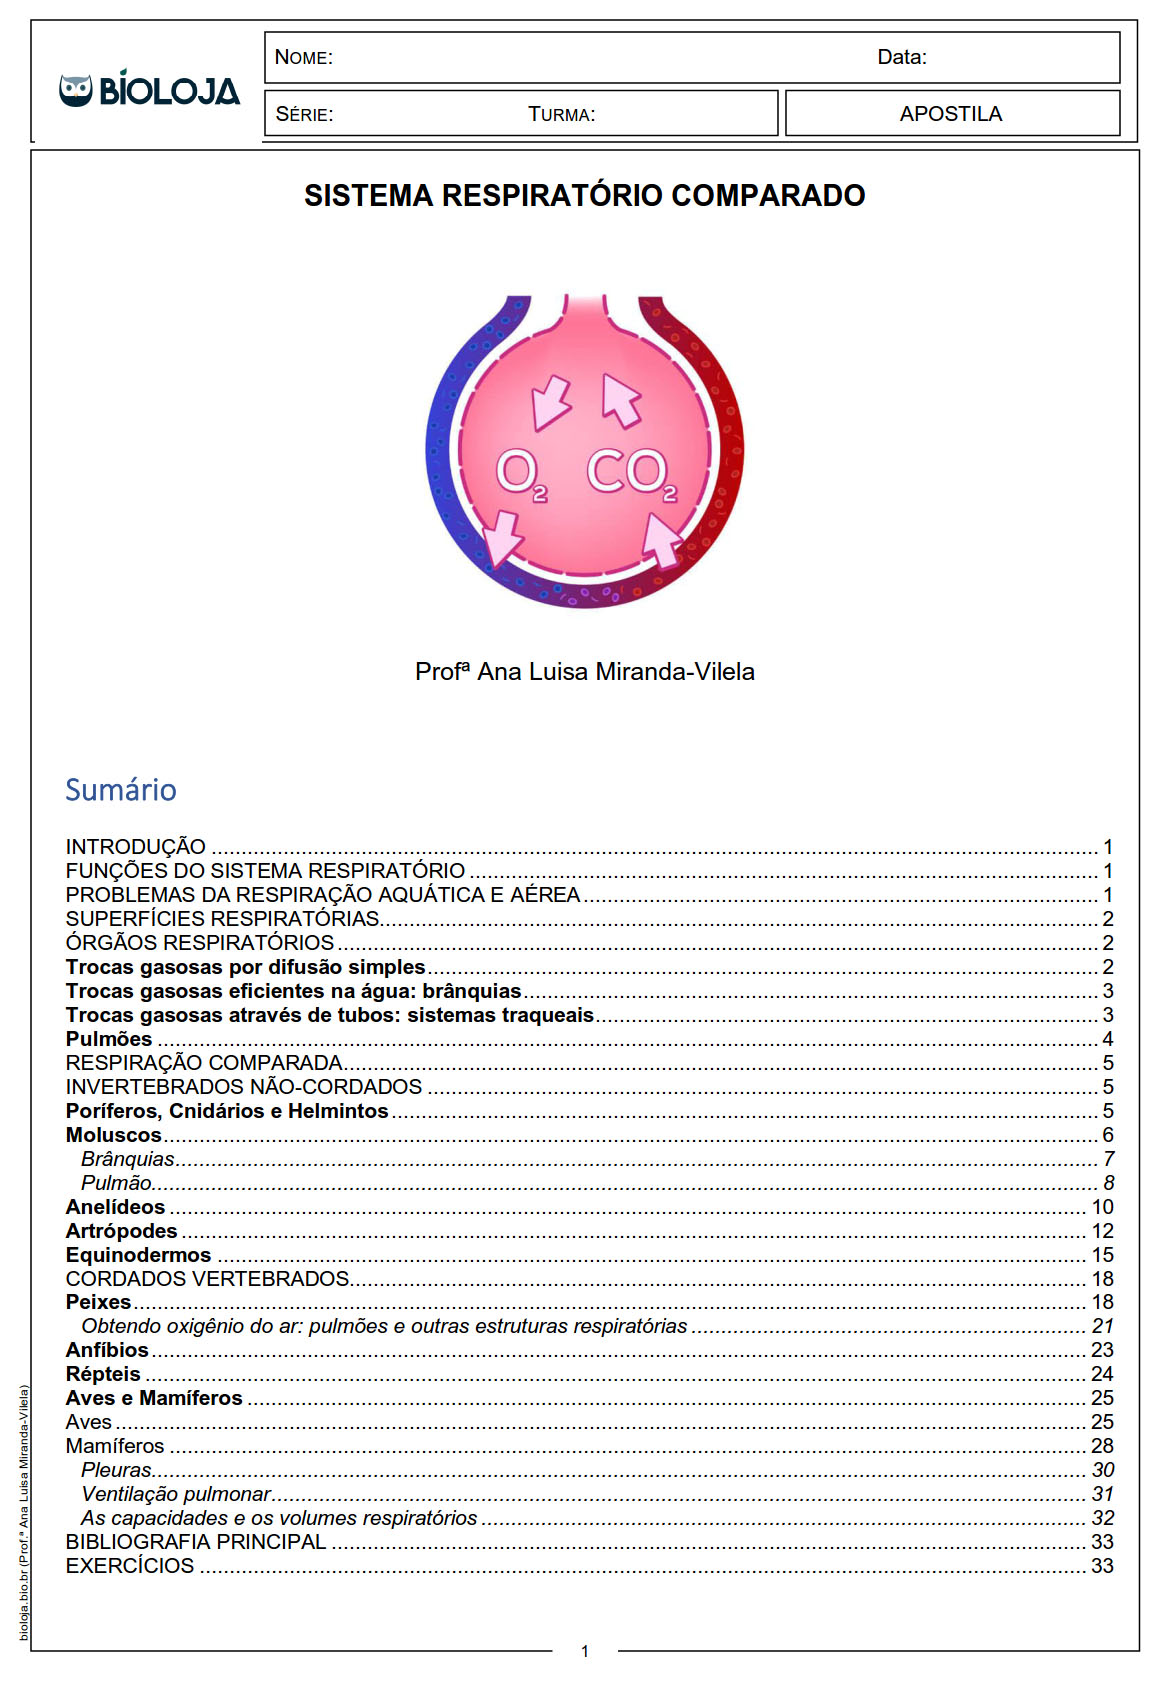 Apostila Sistema respiratório comparado slide 0